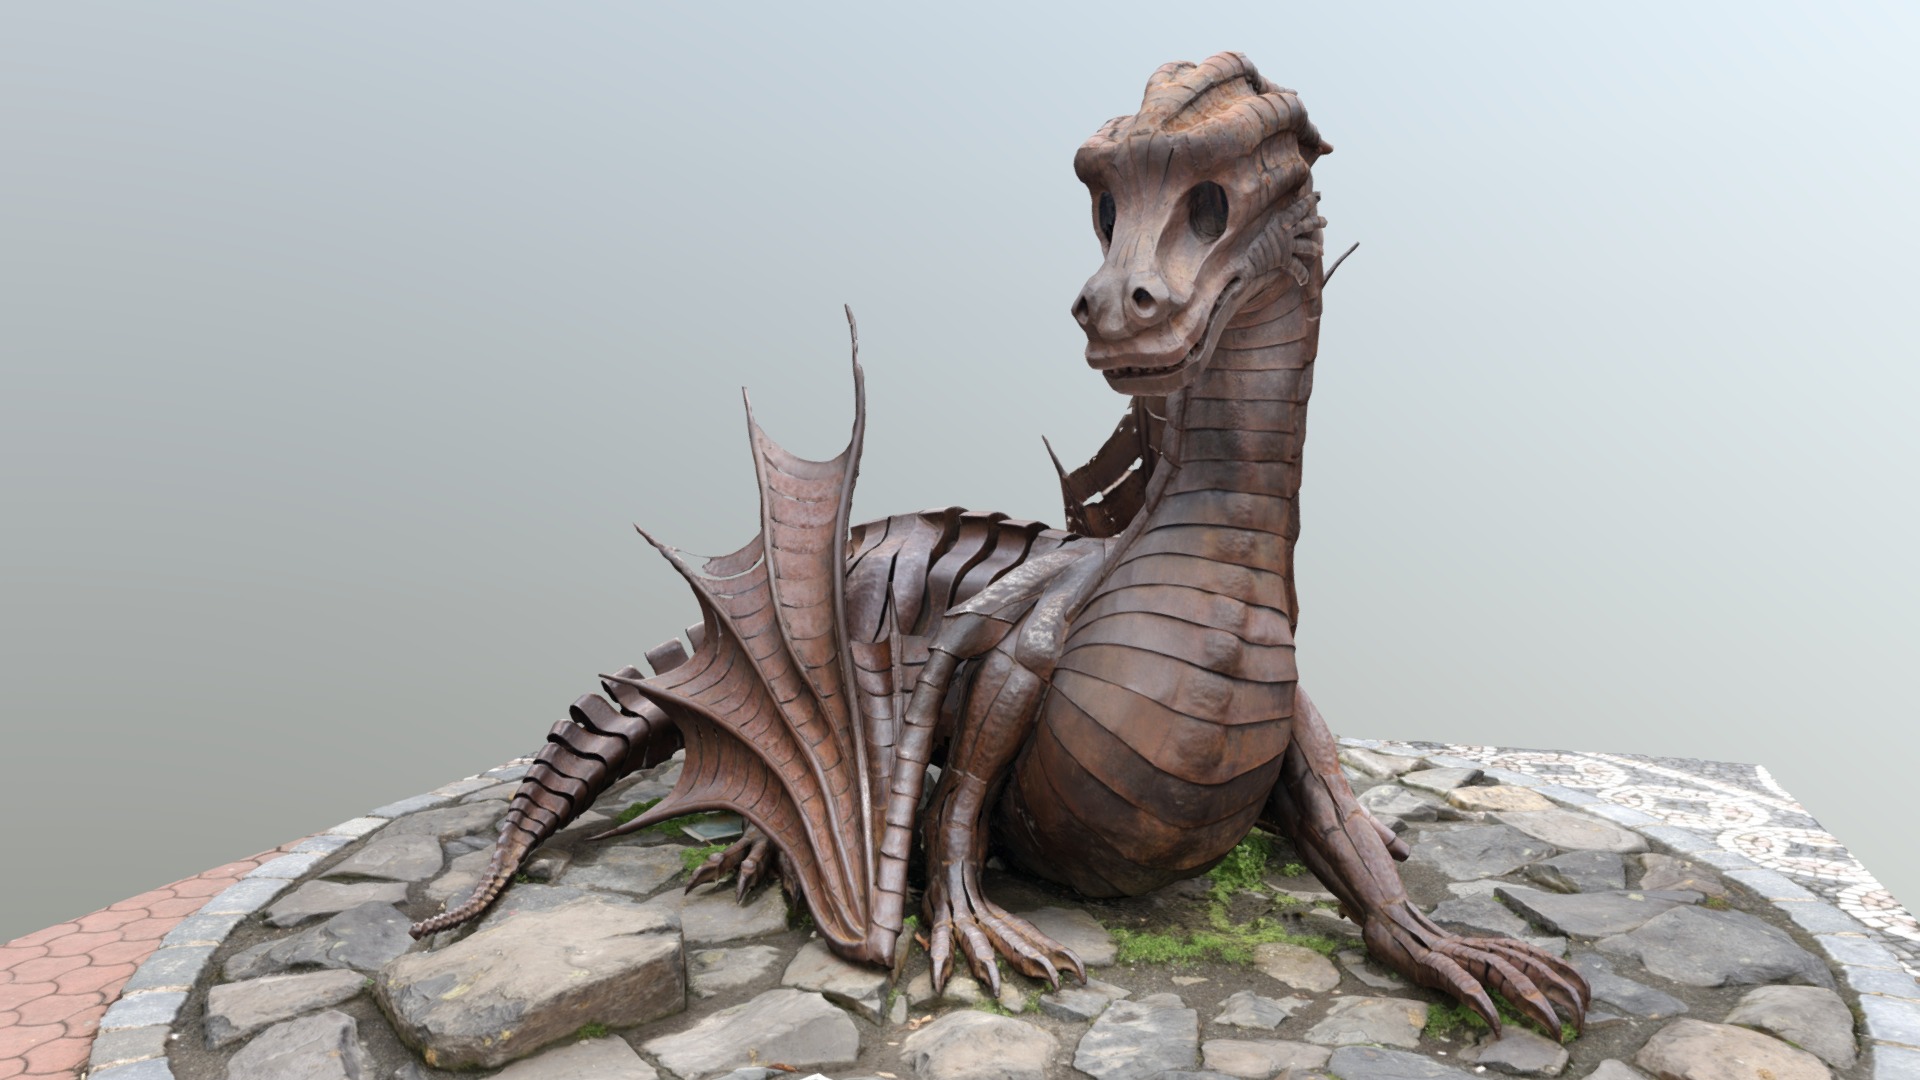 3D model The Fairytale Dragon of Jičín, Czech Republic - This is a 3D model of the The Fairytale Dragon of Jičín, Czech Republic. The 3D model is about a skeleton of an animal.